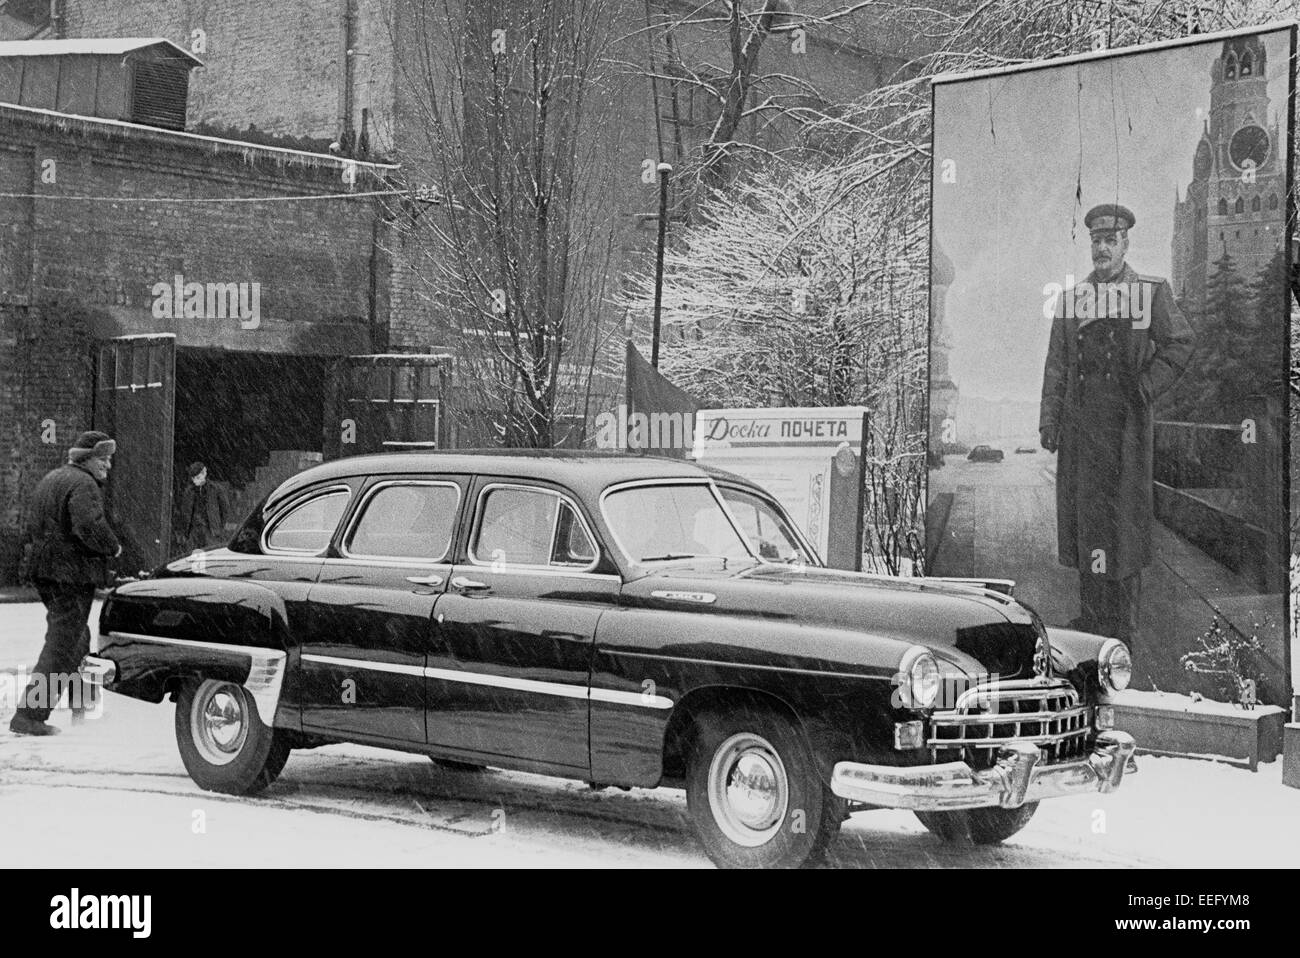 Auto di ZIM stare vicino a un poster con una figura di Stalin. Cantiere navale militare di Kiev. 1954. Foto Stock